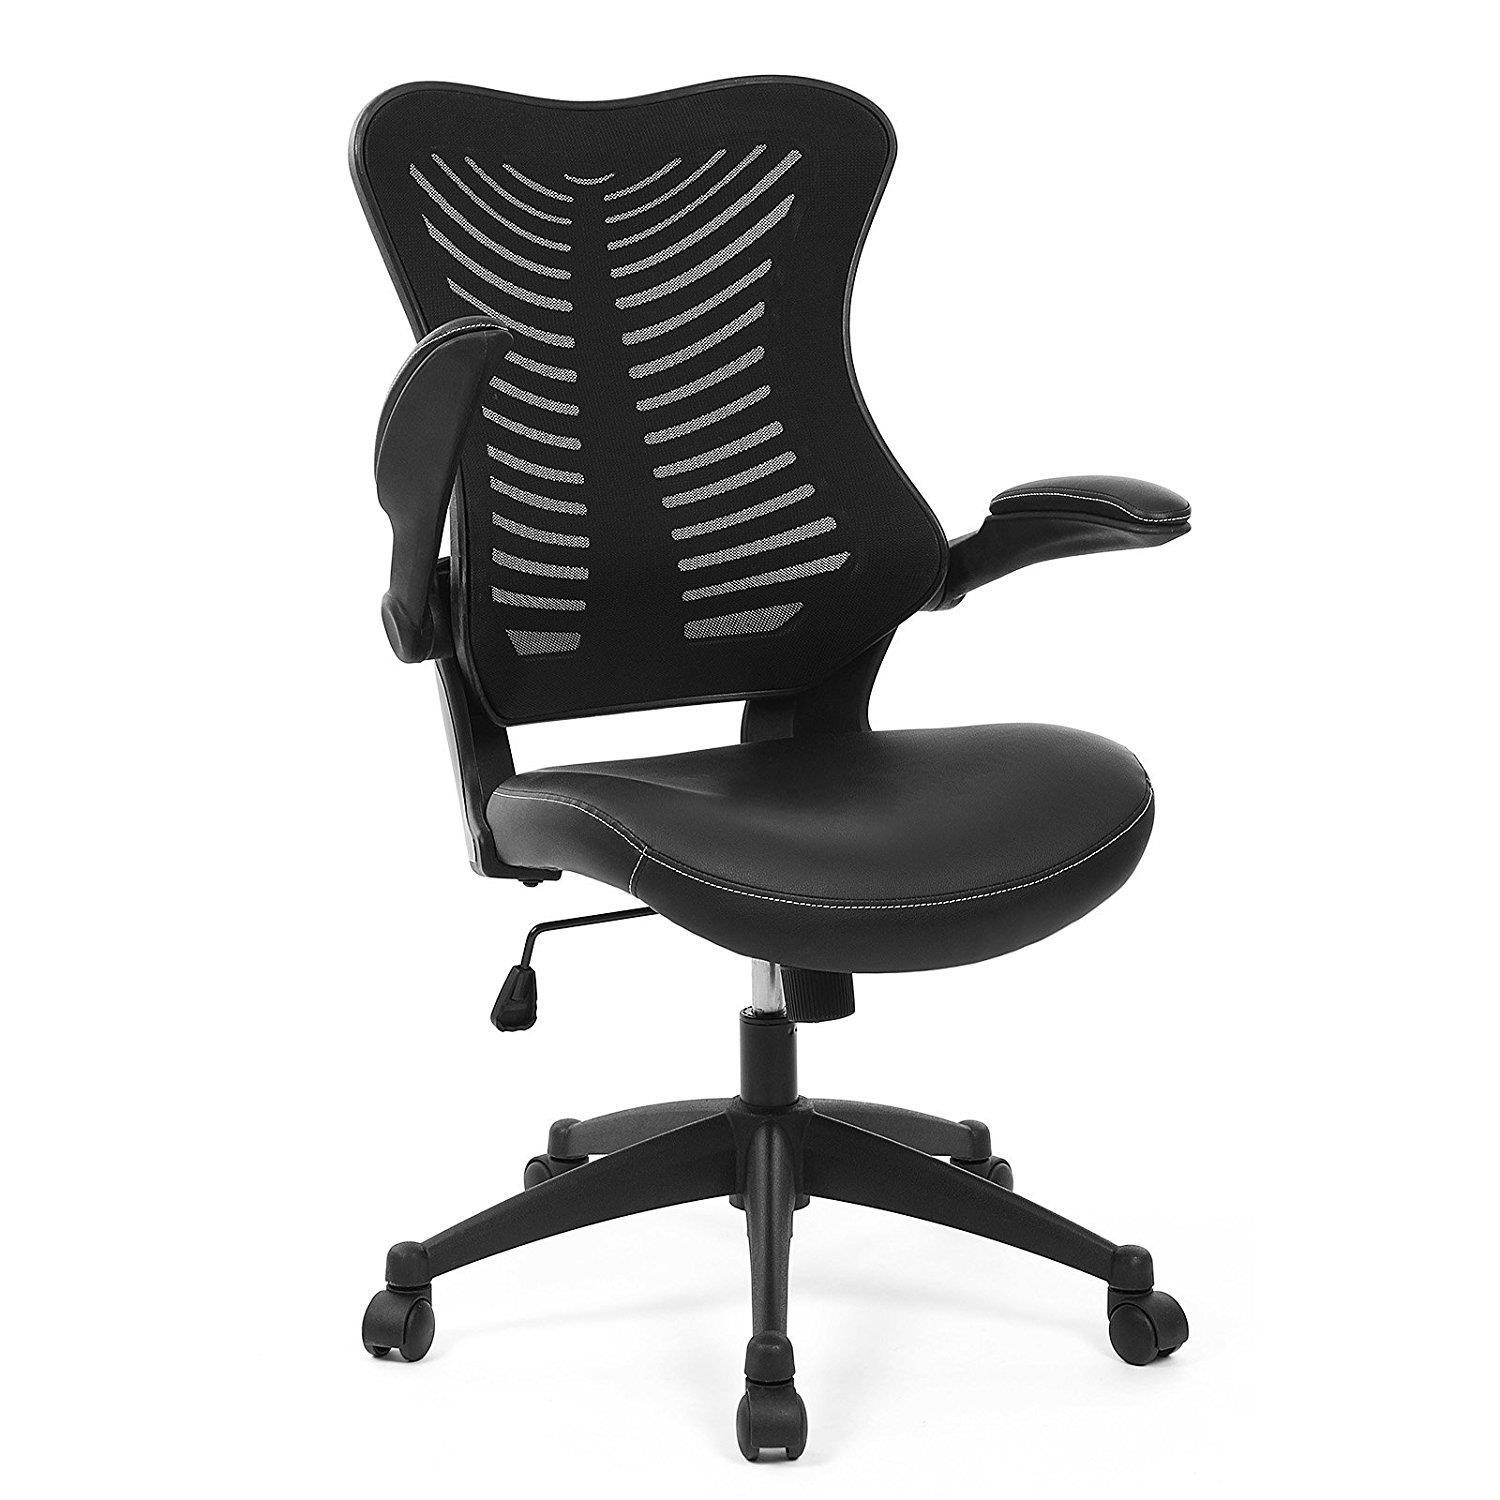 Chaise de bureau PEKO, Design ergonomique, Accoudoirs rabattables, Cuir et Maille Respirable, Noir